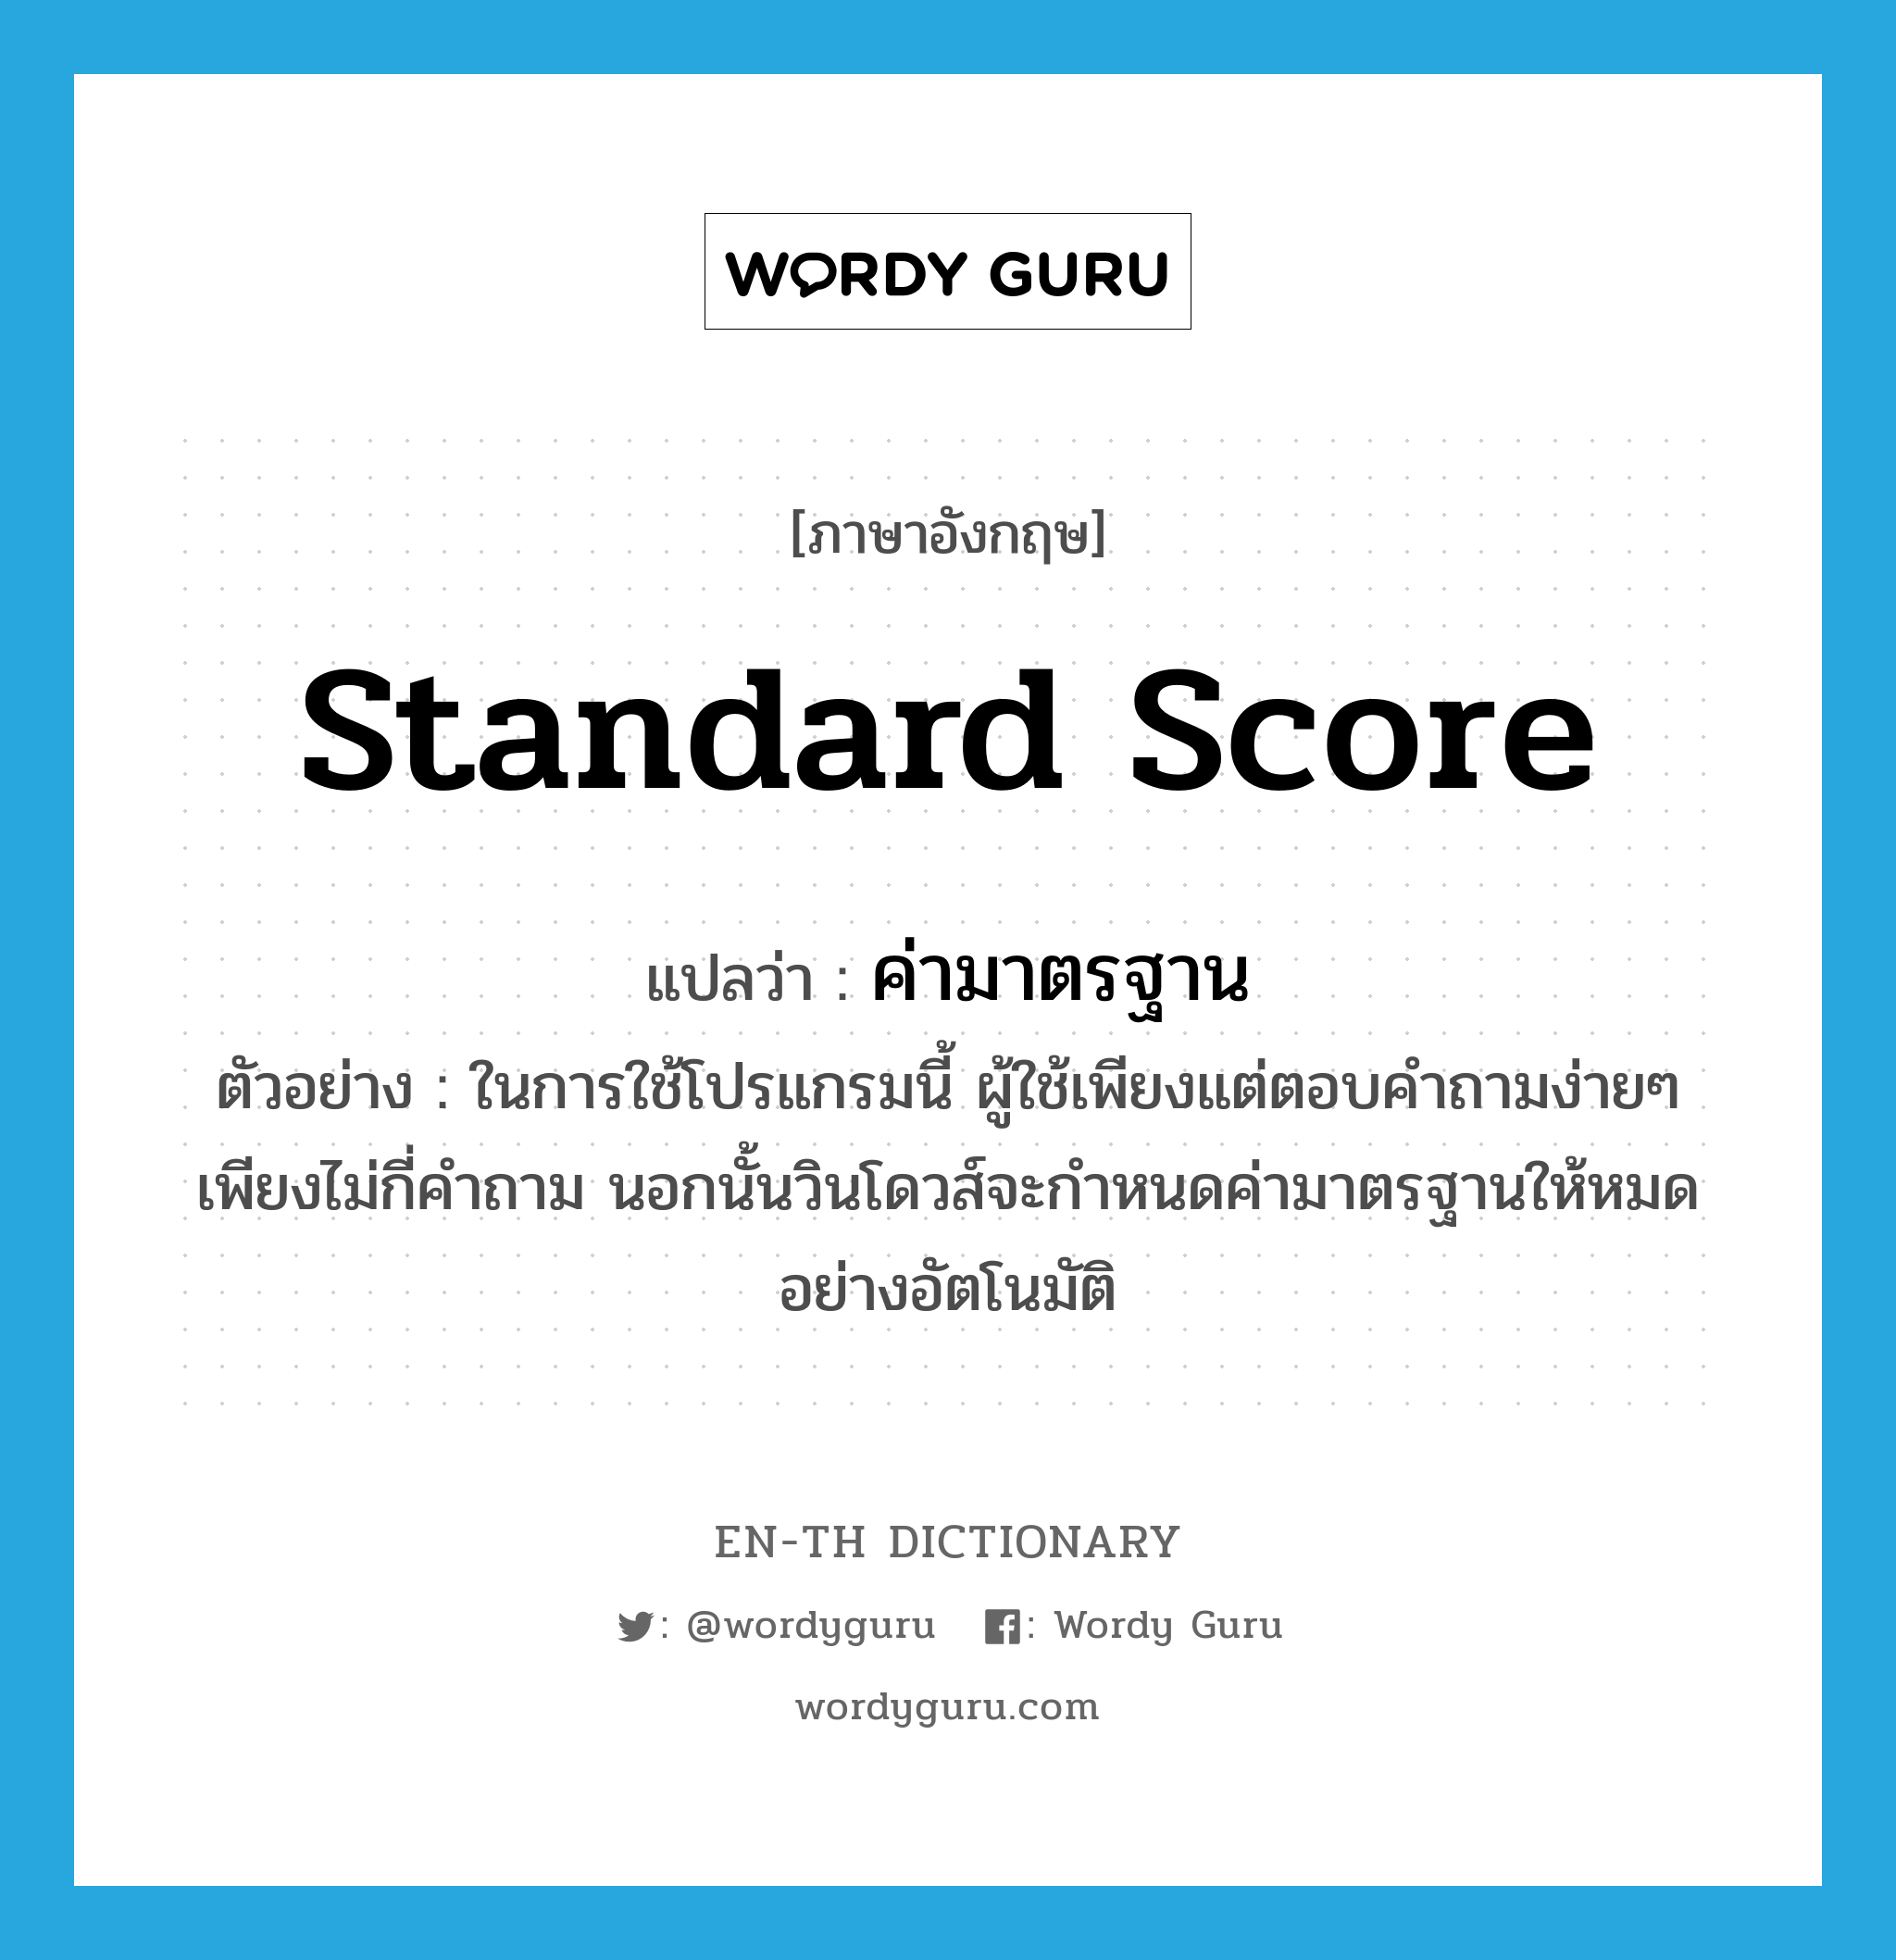 standard score แปลว่า?, คำศัพท์ภาษาอังกฤษ standard score แปลว่า ค่ามาตรฐาน ประเภท N ตัวอย่าง ในการใช้โปรแกรมนี้ ผู้ใช้เพียงแต่ตอบคำถามง่ายๆ เพียงไม่กี่คำถาม นอกนั้นวินโดวส์จะกำหนดค่ามาตรฐานให้หมดอย่างอัตโนมัติ หมวด N